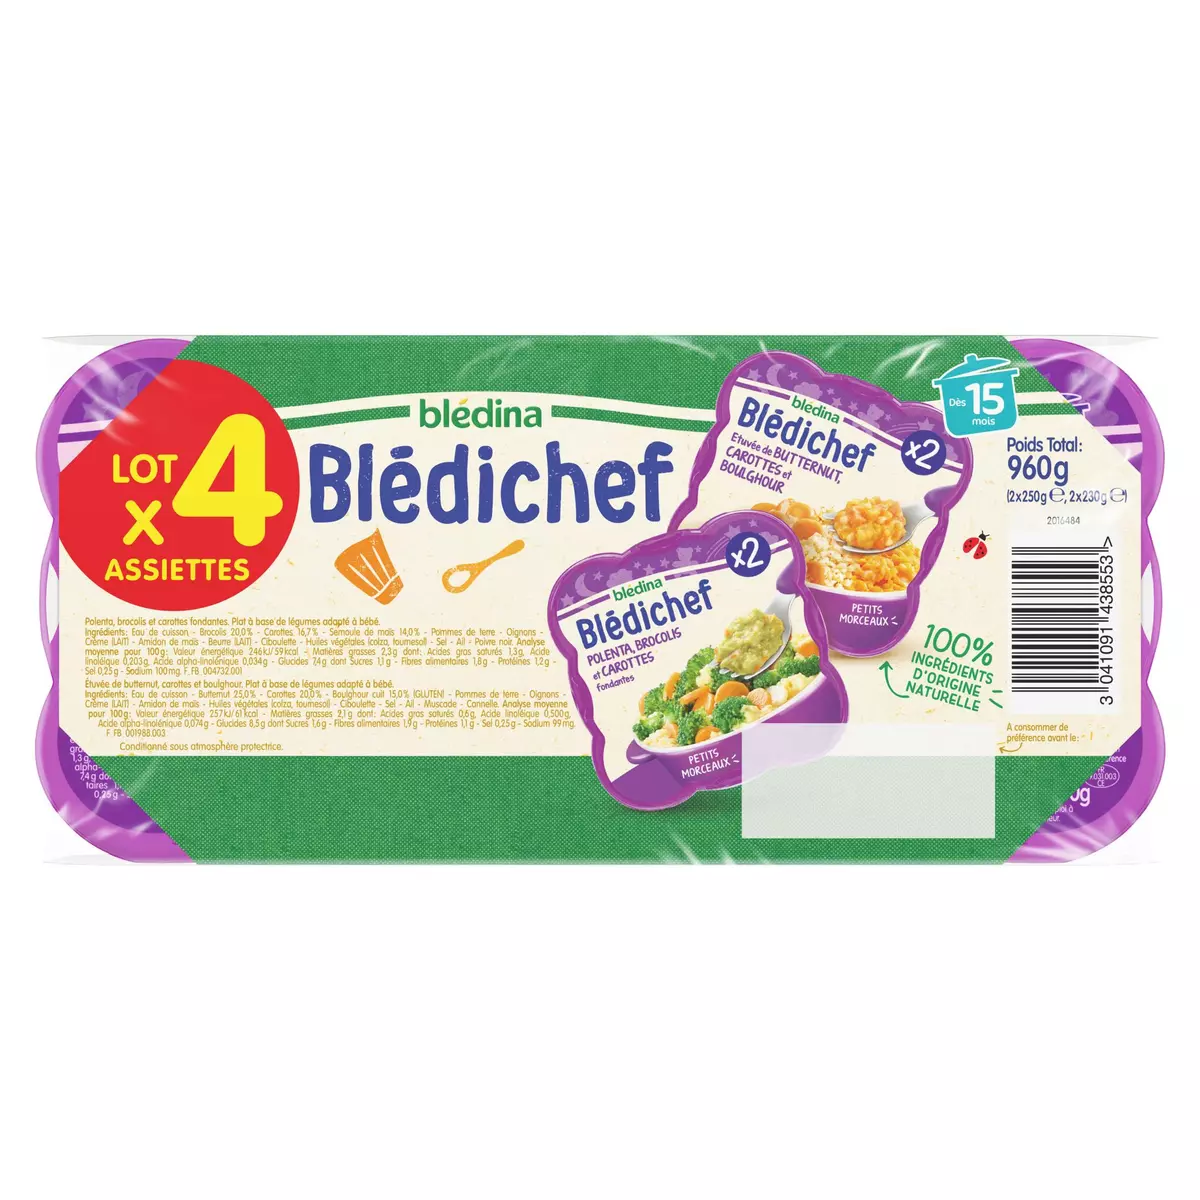 BLEDICHEF Assiettes polenta brocolis carottes et butternut carotte boulghour dès 15 mois 2x250g et 2x230g 960g